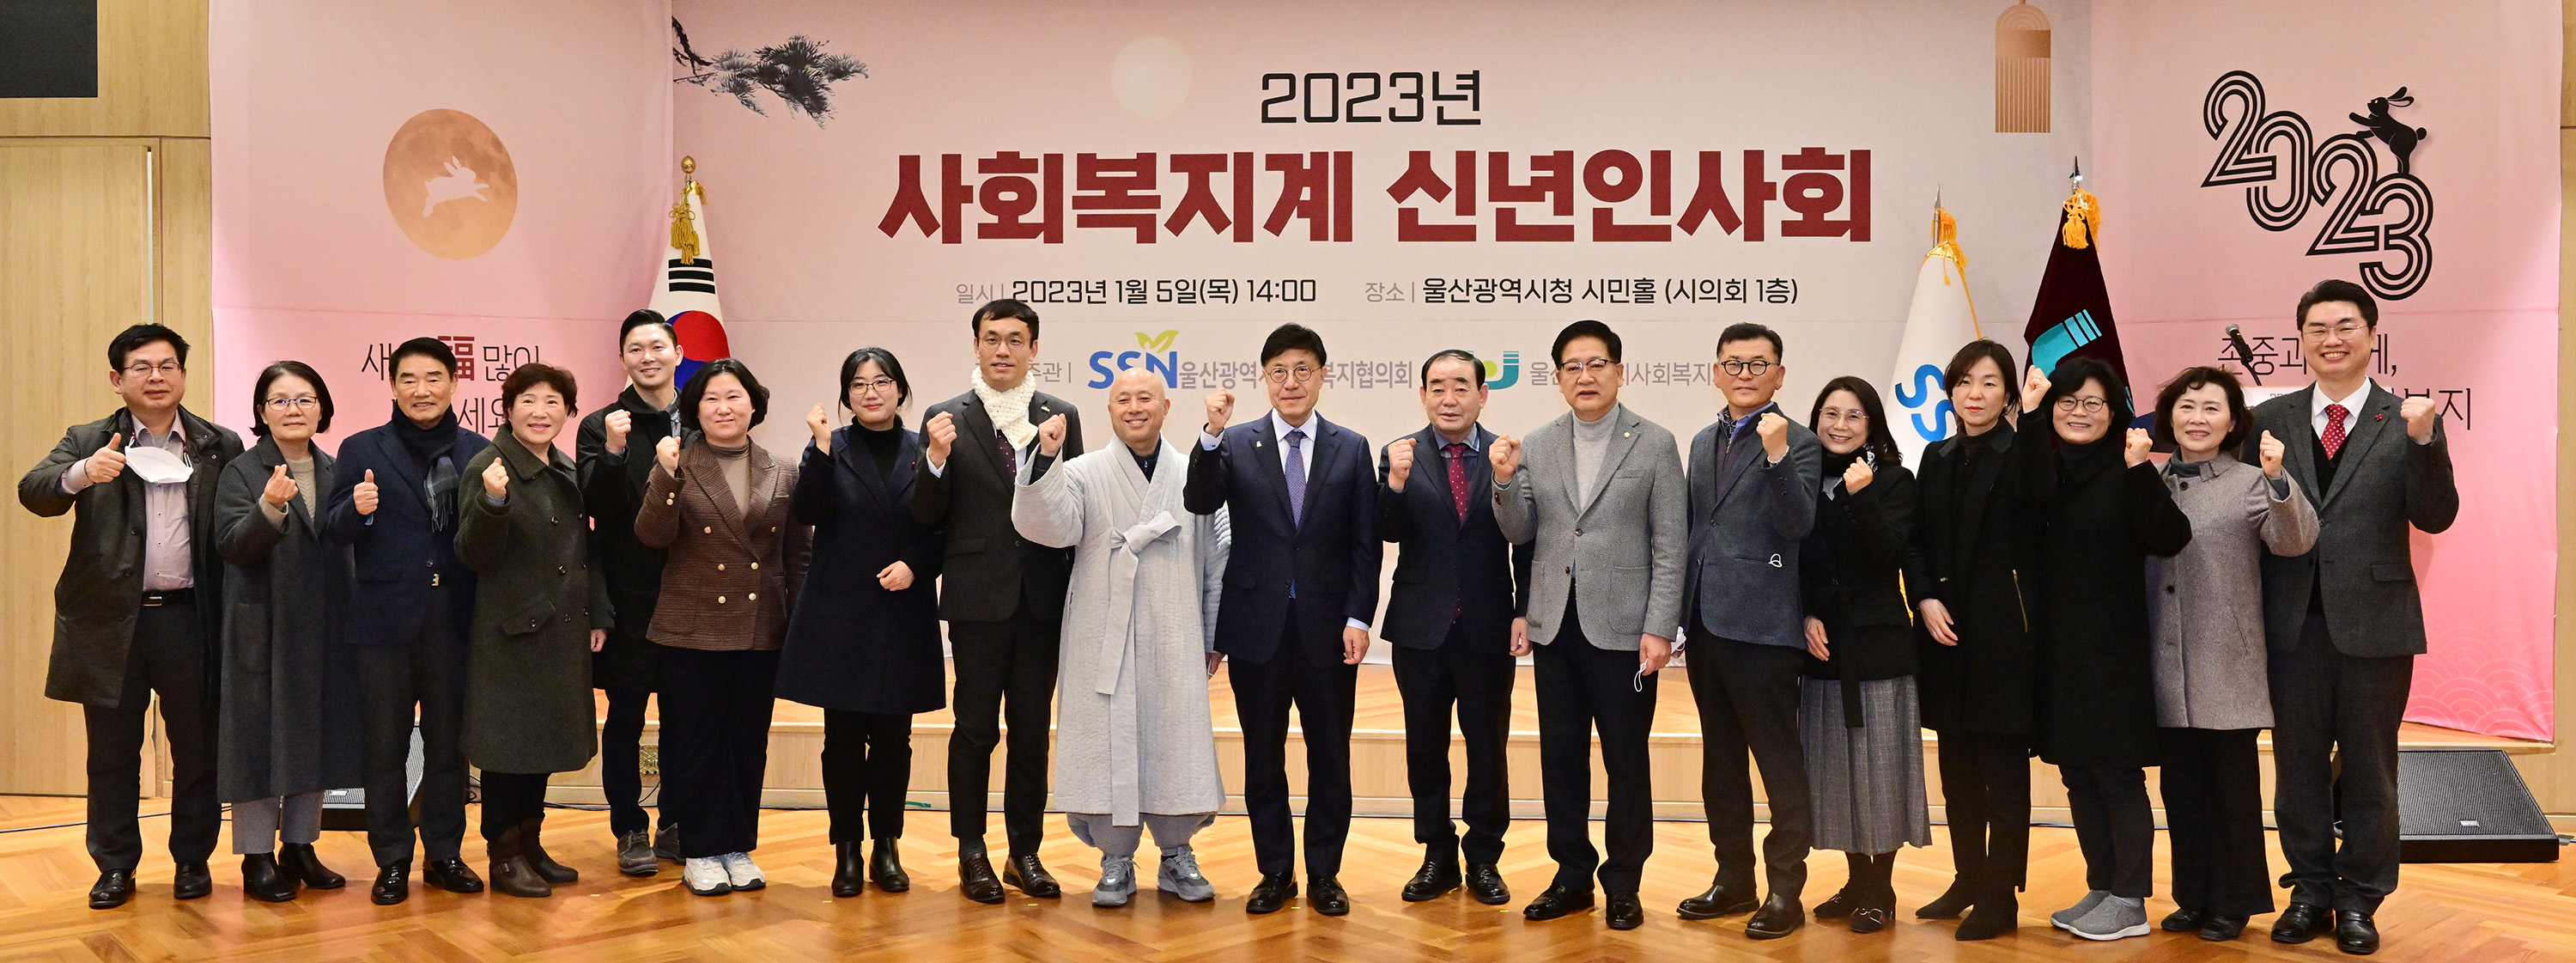 2023년 사회복지계 신년인사회4